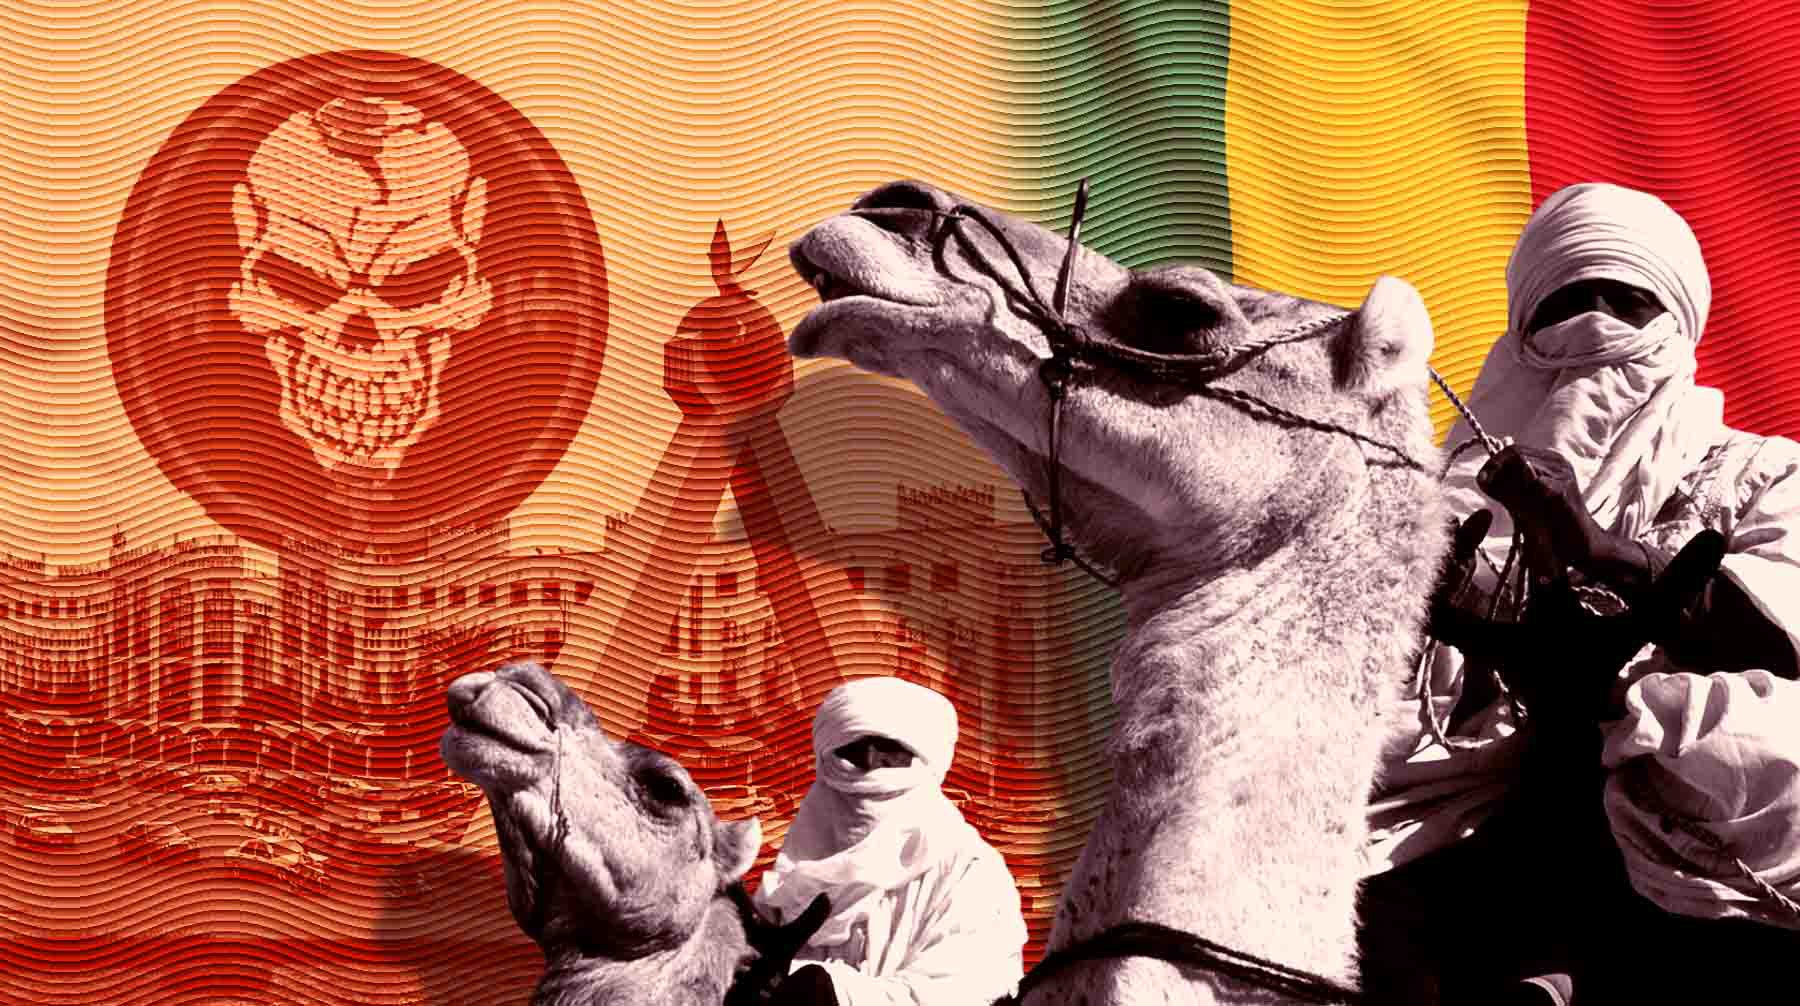 Dailystorm - Запад против «властелинов пустыни». Что происходит в Мали — стране, запросившей помощь у российской ЧВК